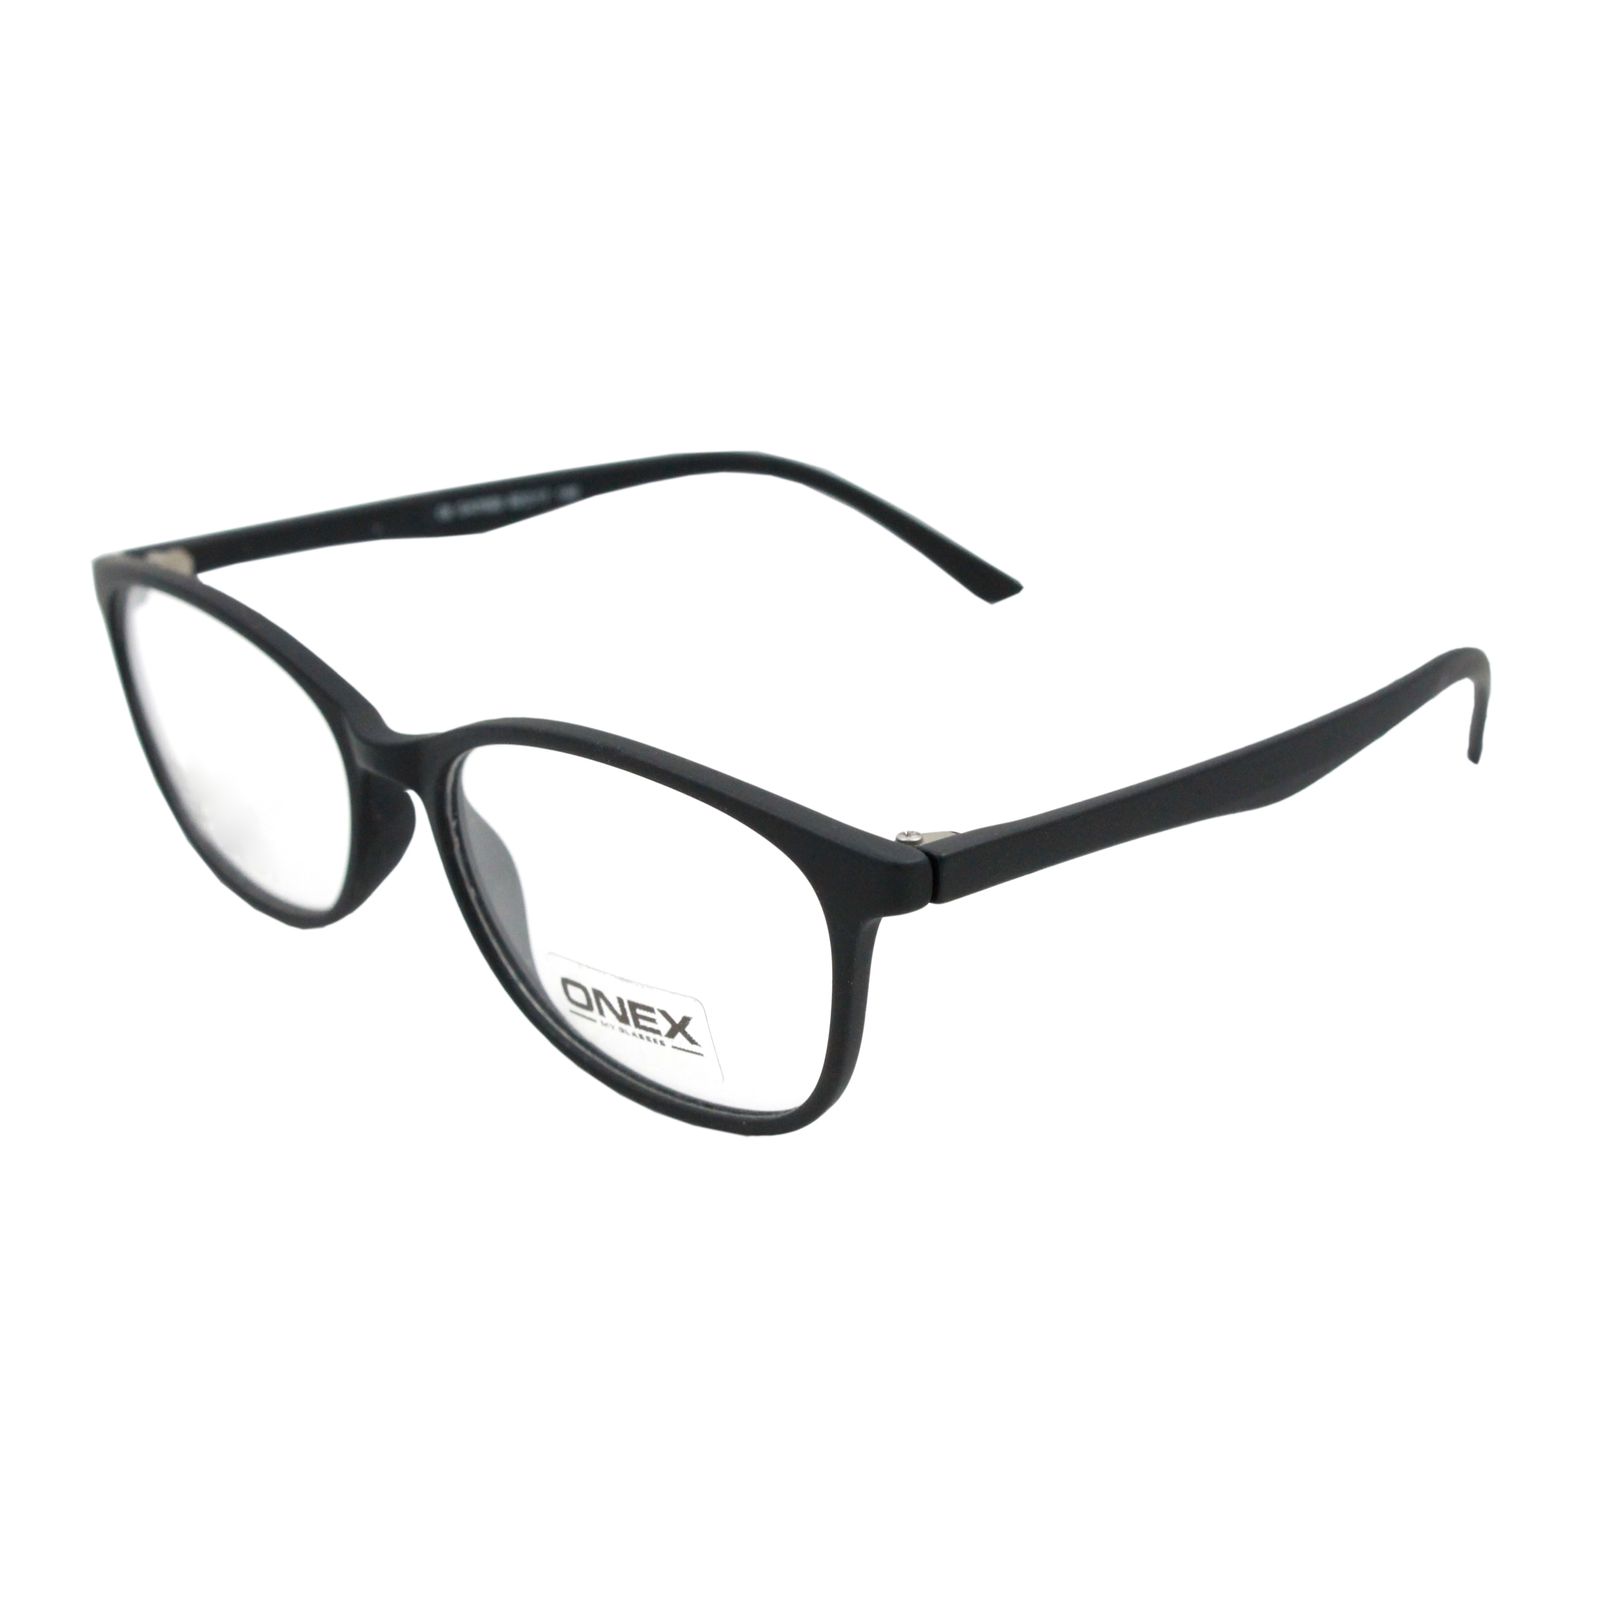 فریم عینک طبی اونکس کد s.1020.d -  - 2